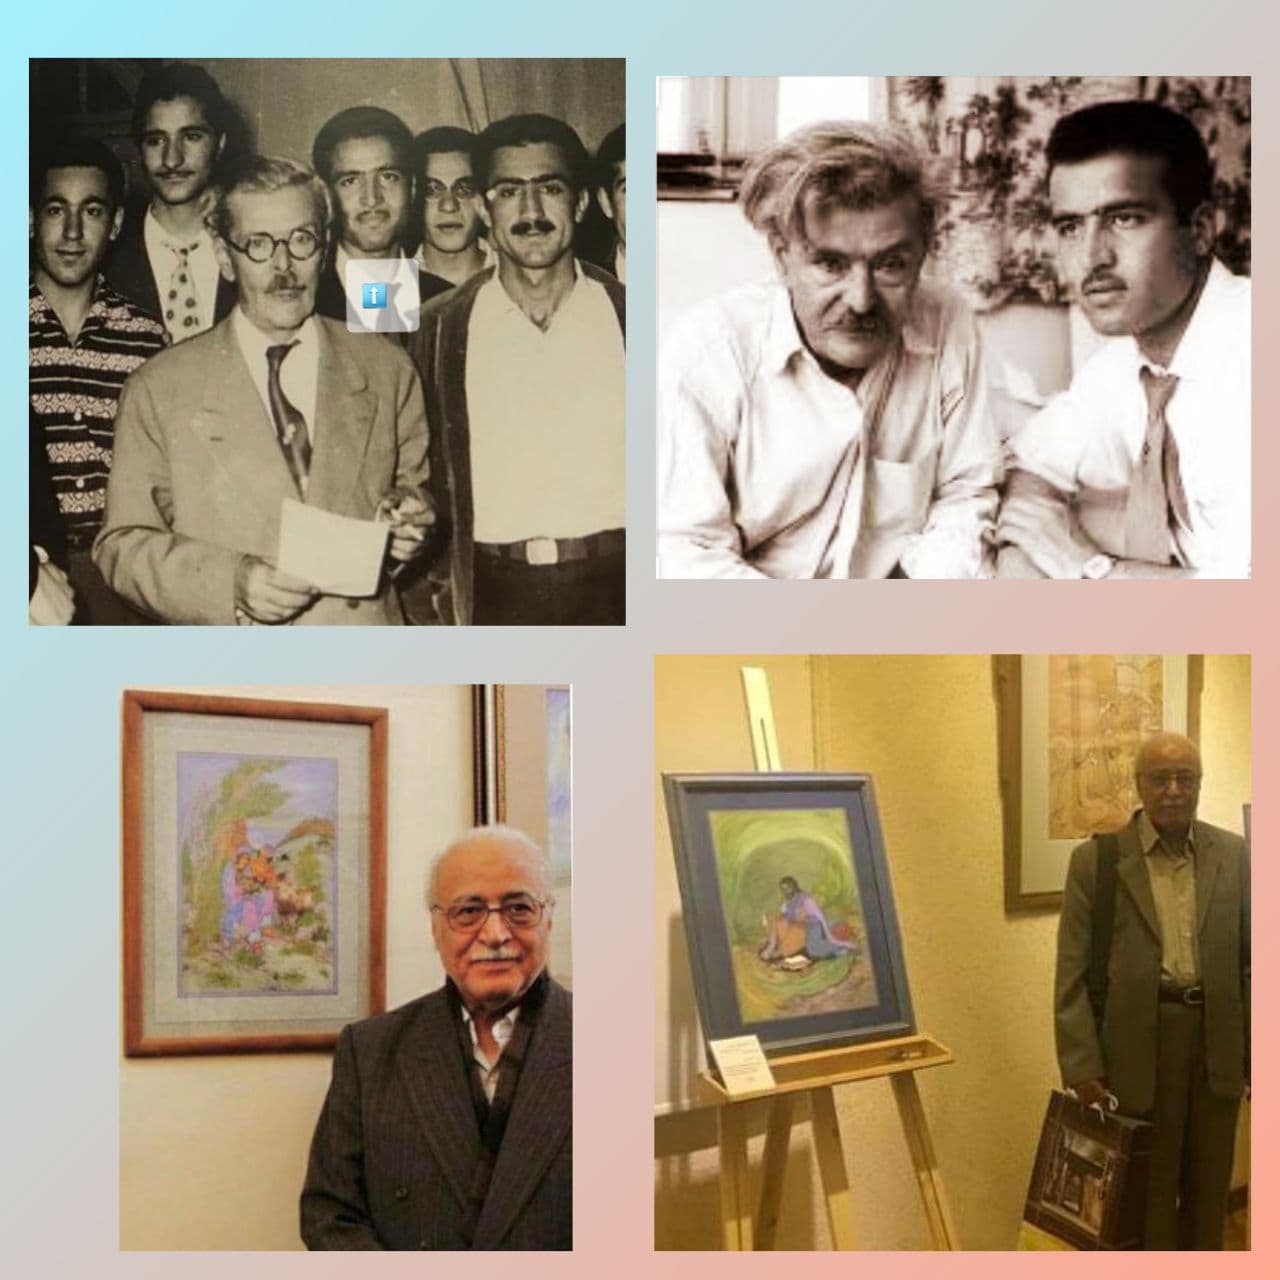 ⚫️ استاد مصطفی سهرابی ،نگارگر معروف ایرانی و نزدیکترین شاگرد بنام استاد حسین بهزاد به دیار باقی شتافت.